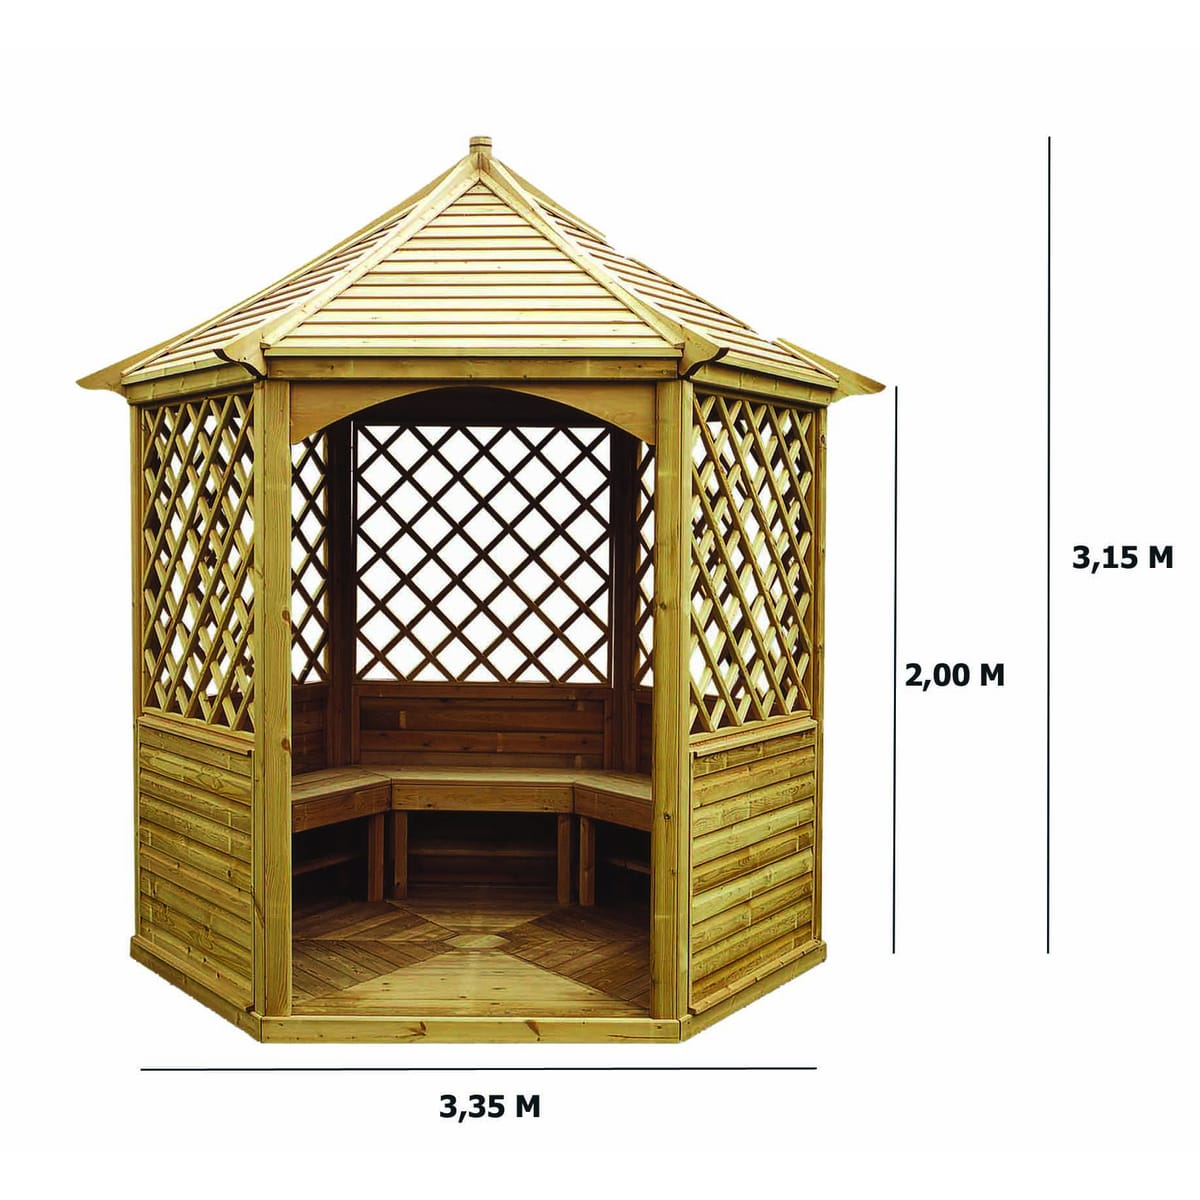 Kiosque de jardin / 4,74 m² Abri en bois hexagonal à prix